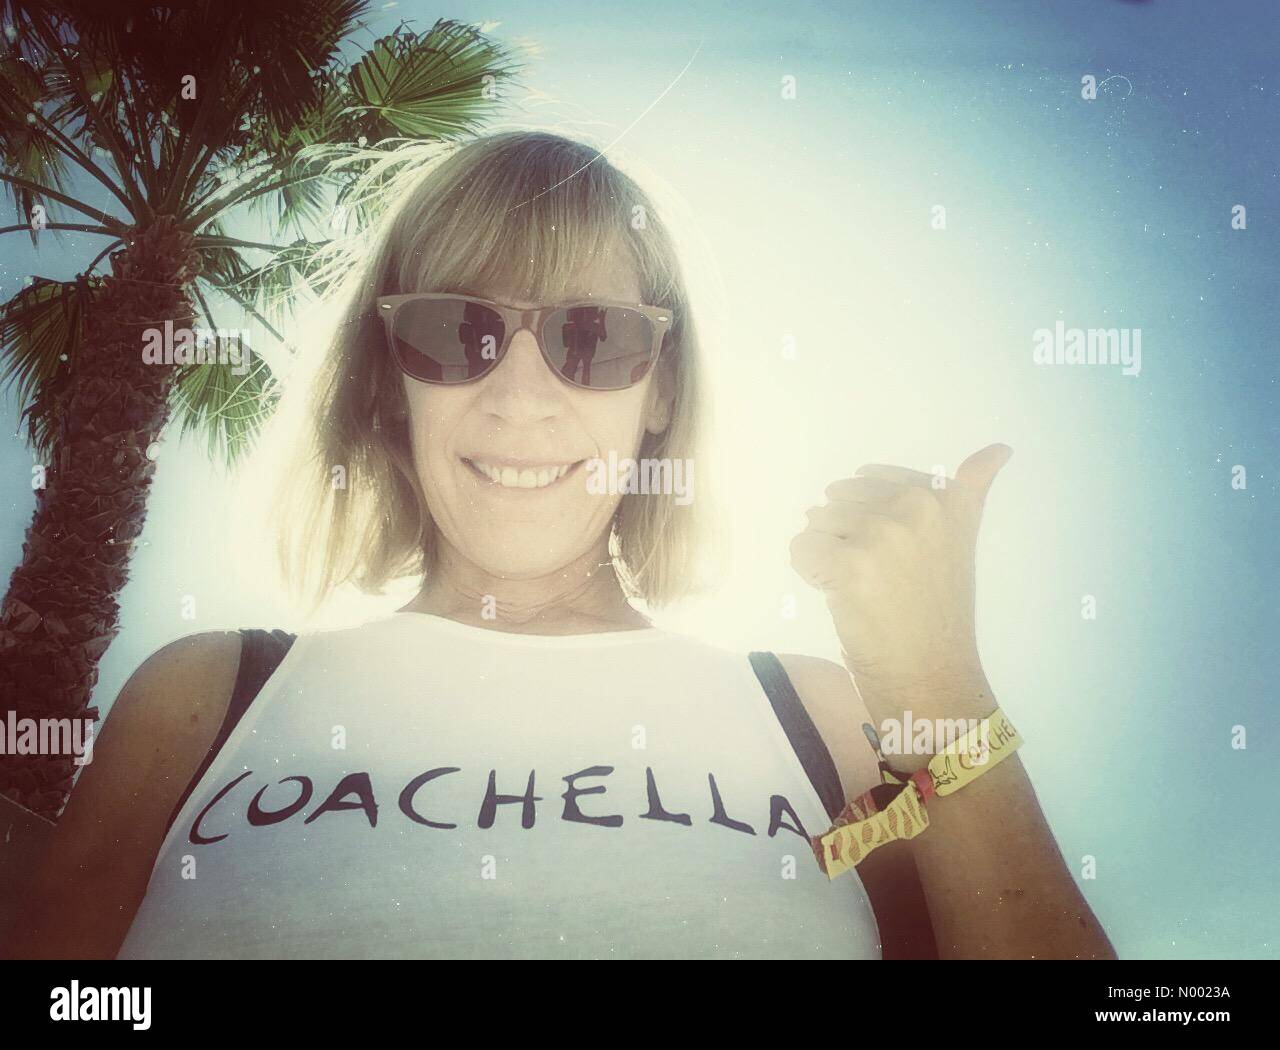 Indio, California USA 9 Avril, 2015 montre Selfies Je suis prêt pour le Coachella Valley Music and Arts Festival qui commence demain. Shirt by H&M aime collection Coachella. Banque D'Images